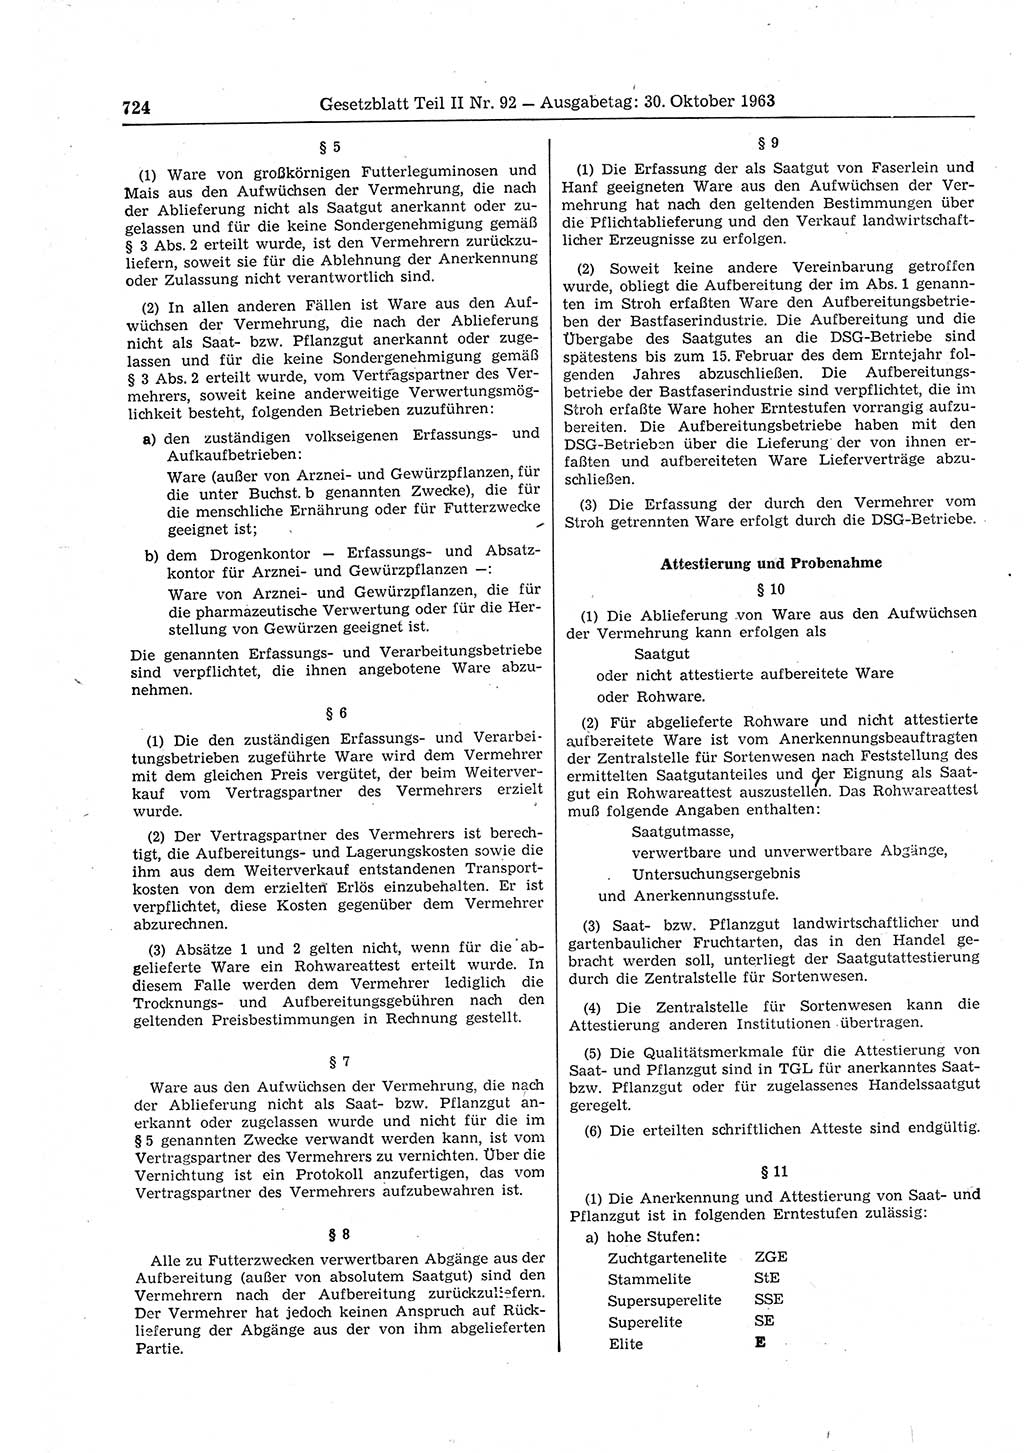 Gesetzblatt (GBl.) der Deutschen Demokratischen Republik (DDR) Teil ⅠⅠ 1963, Seite 724 (GBl. DDR ⅠⅠ 1963, S. 724)